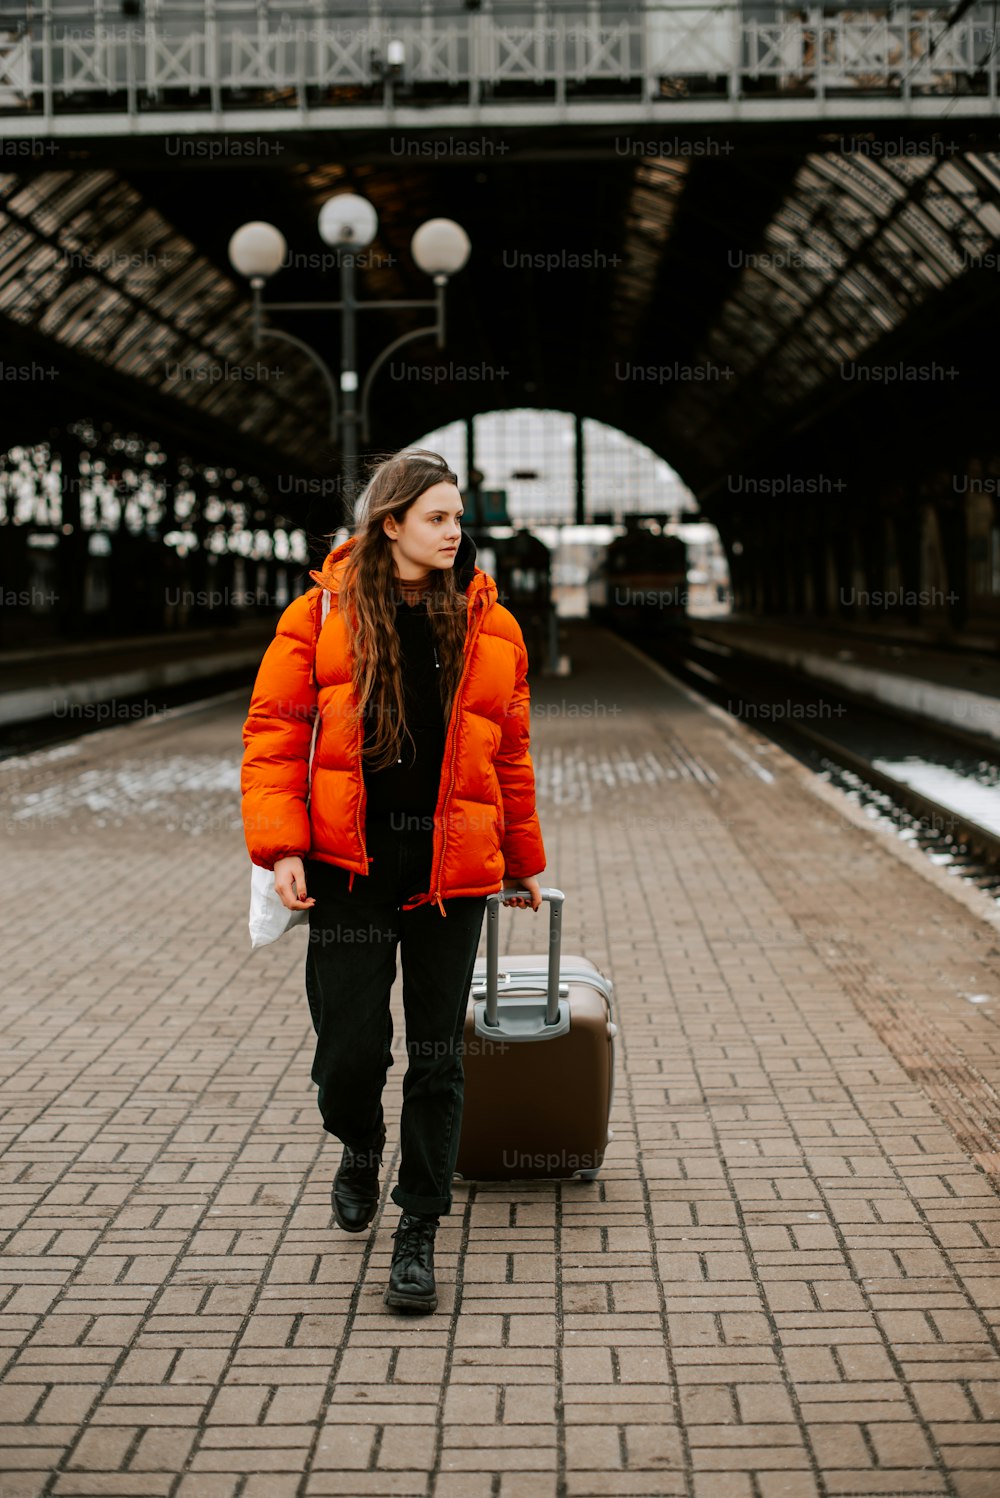 スーツケースを運ぶオレンジ色のジャケットを着た女性